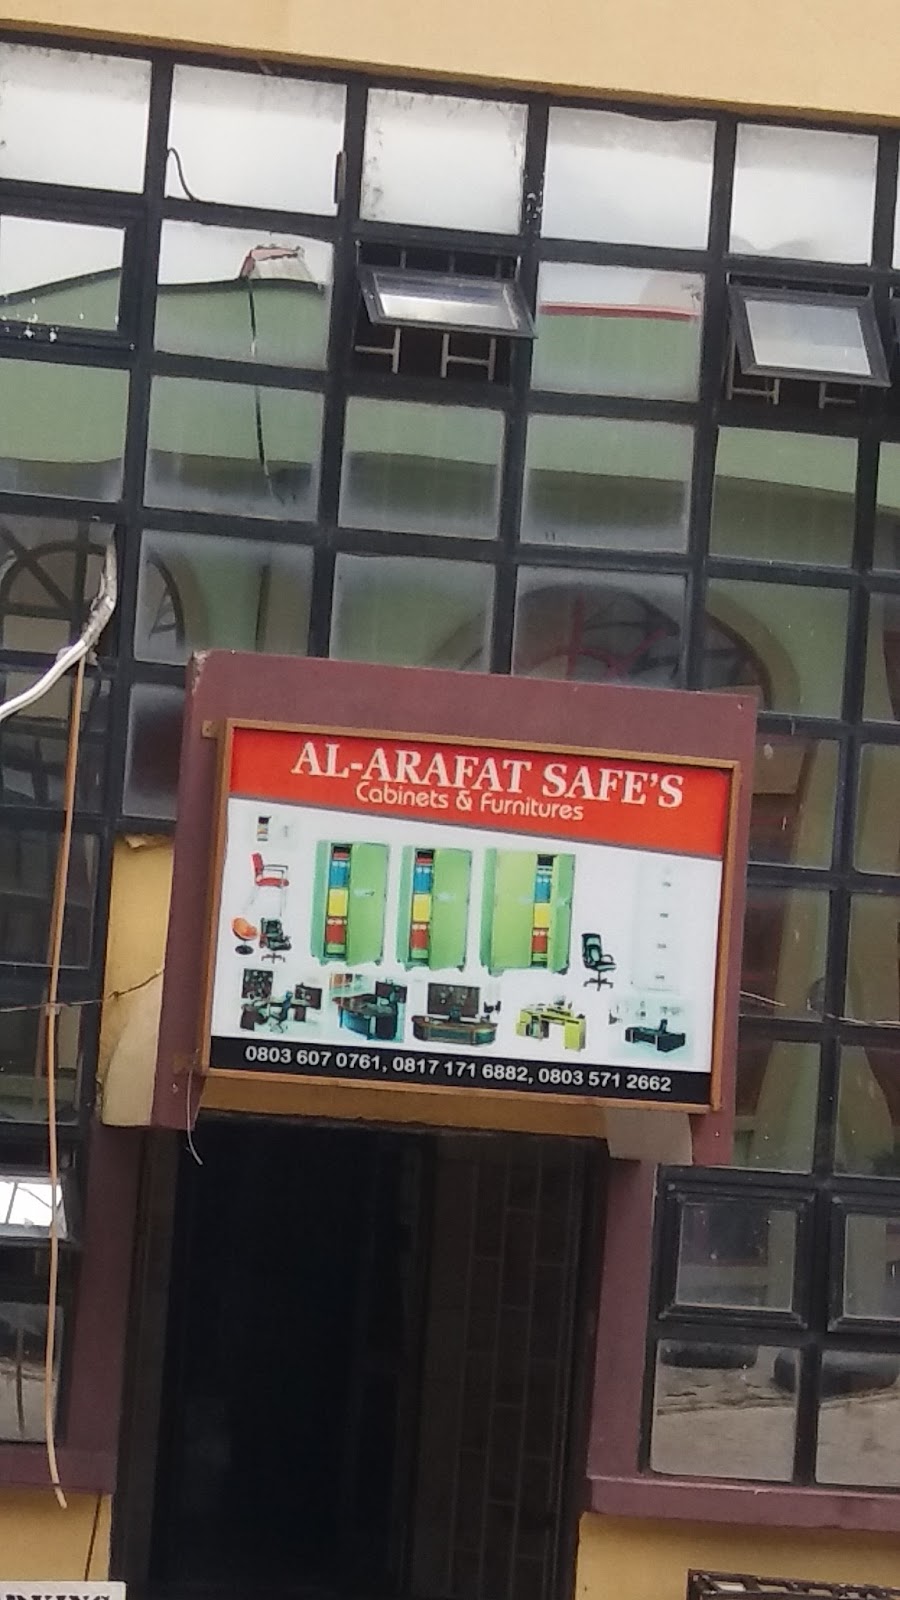 Al-Arafat Safes